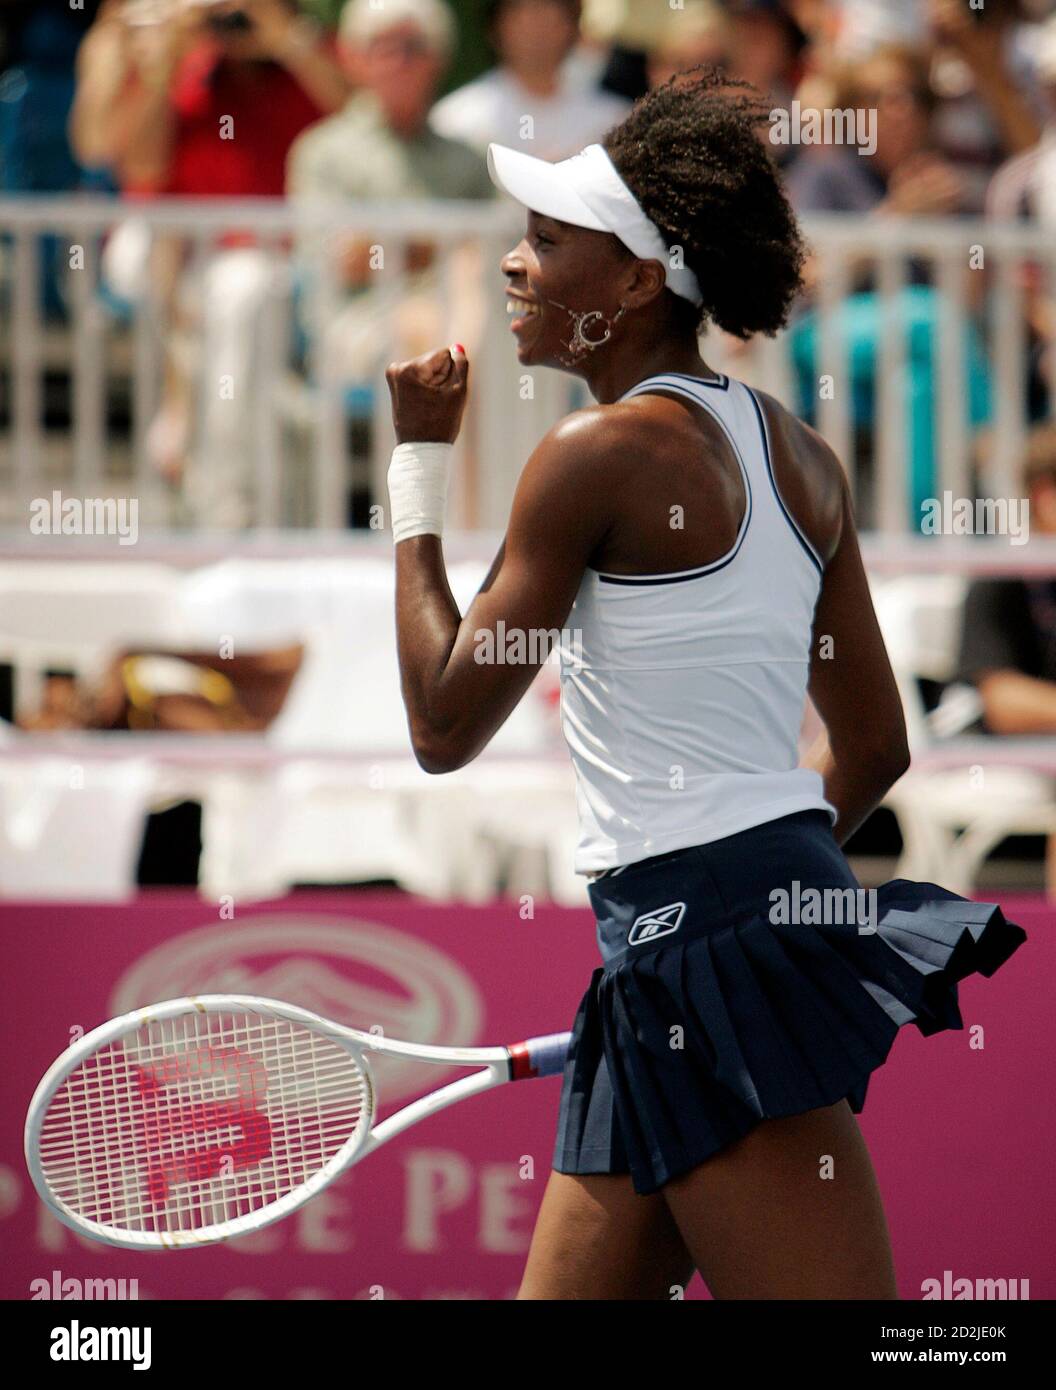 Venus Williams aus den USA feiert, nachdem sie Anna Chakvetadze aus Russland in ihrem Einzelspiel im Fed Cup-Tennis-Halbfinale in Stowe, Vermont, am 15. Juli 2007 besiegt hat. REUTERS/Brian Snyder (USA) Stockfoto